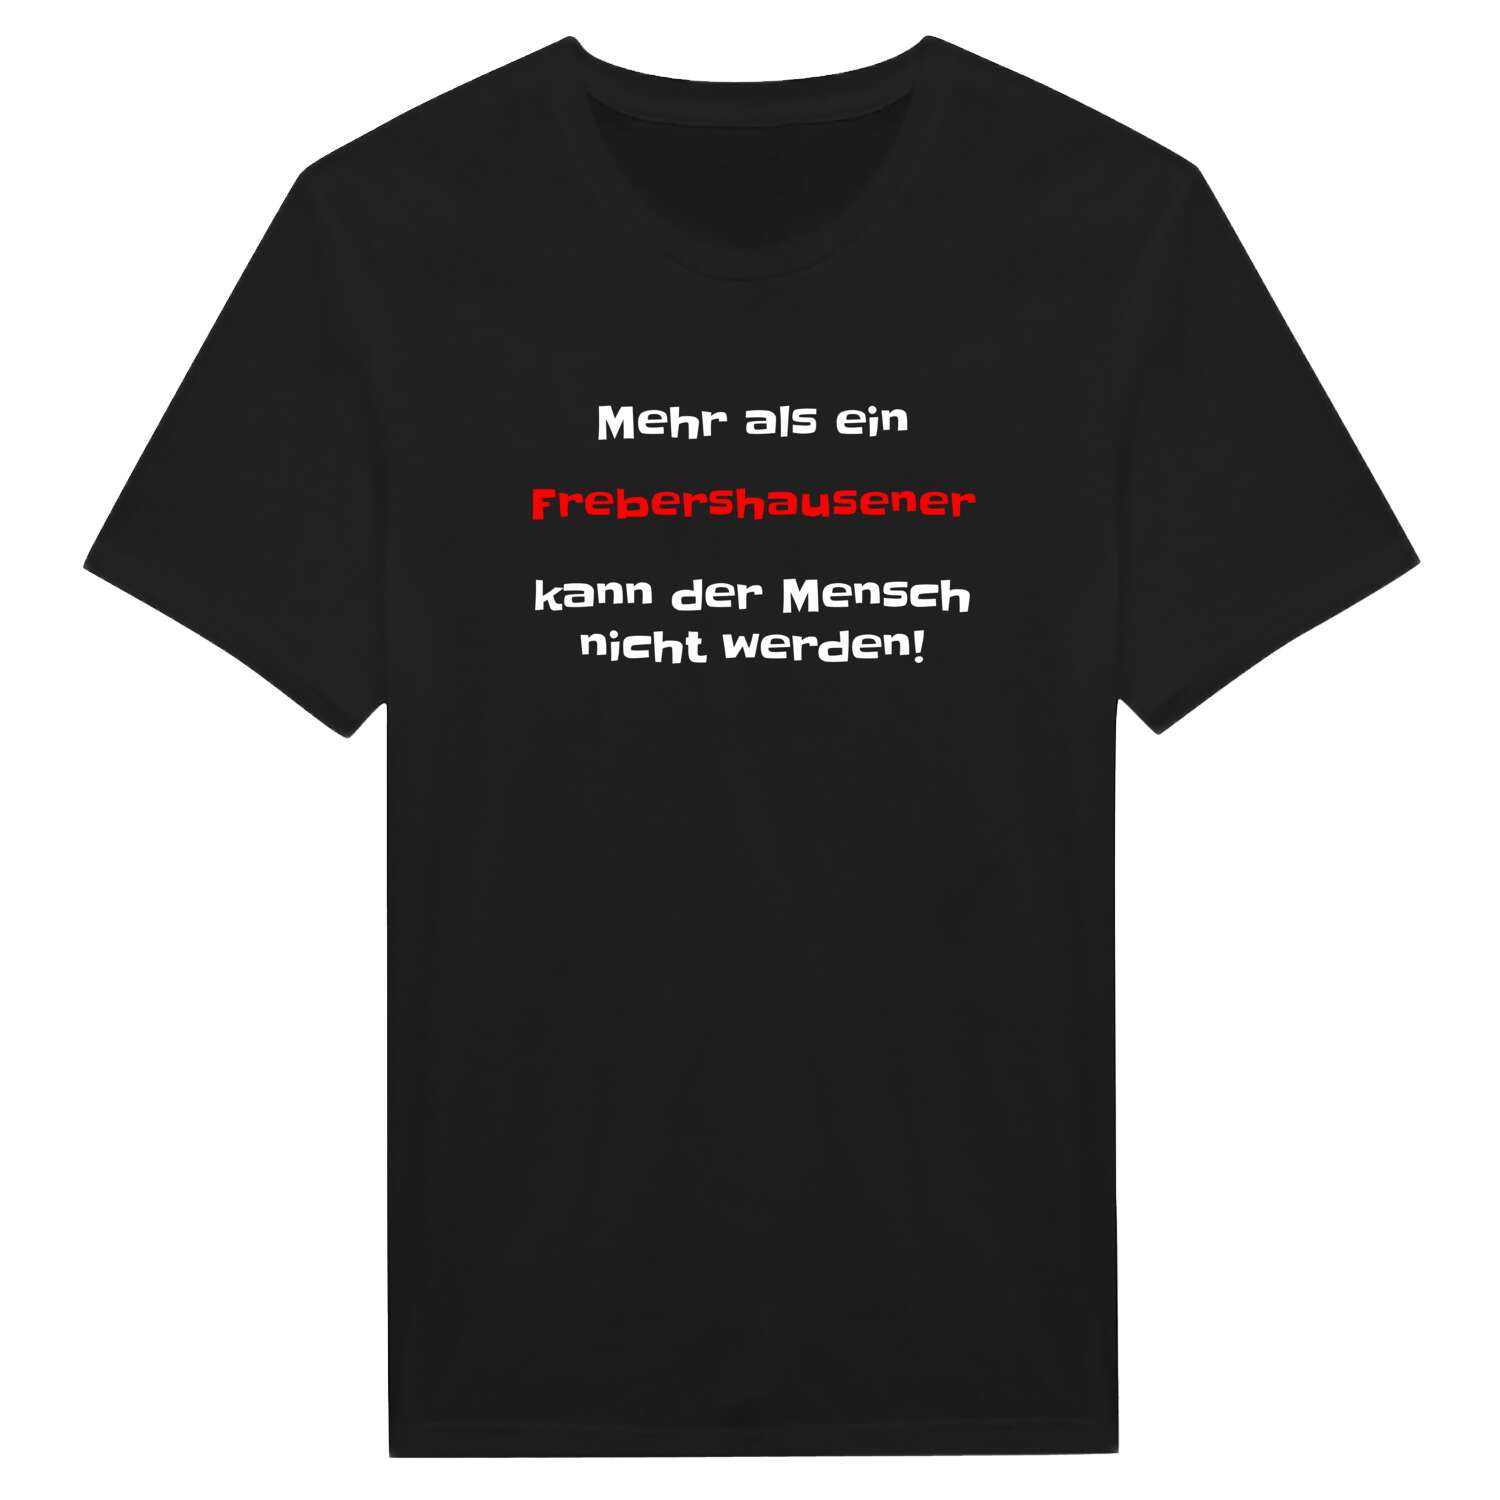 Frebershausen T-Shirt »Mehr als ein«